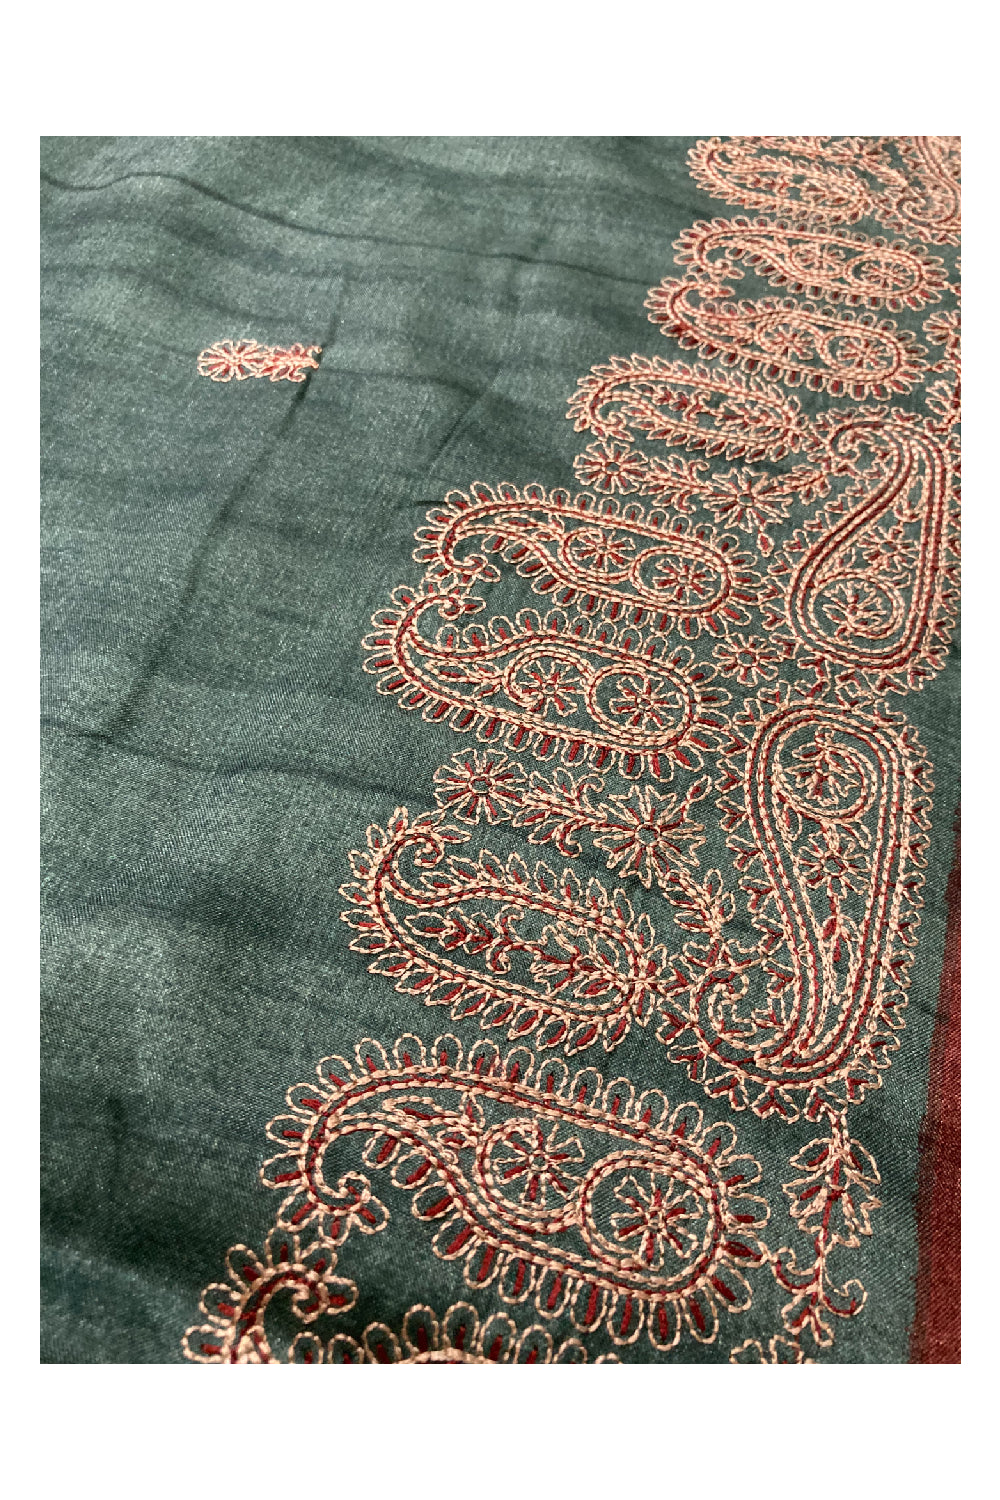 Southloom Manipuri Silk Dark Green Designer Saree with Embroidery work